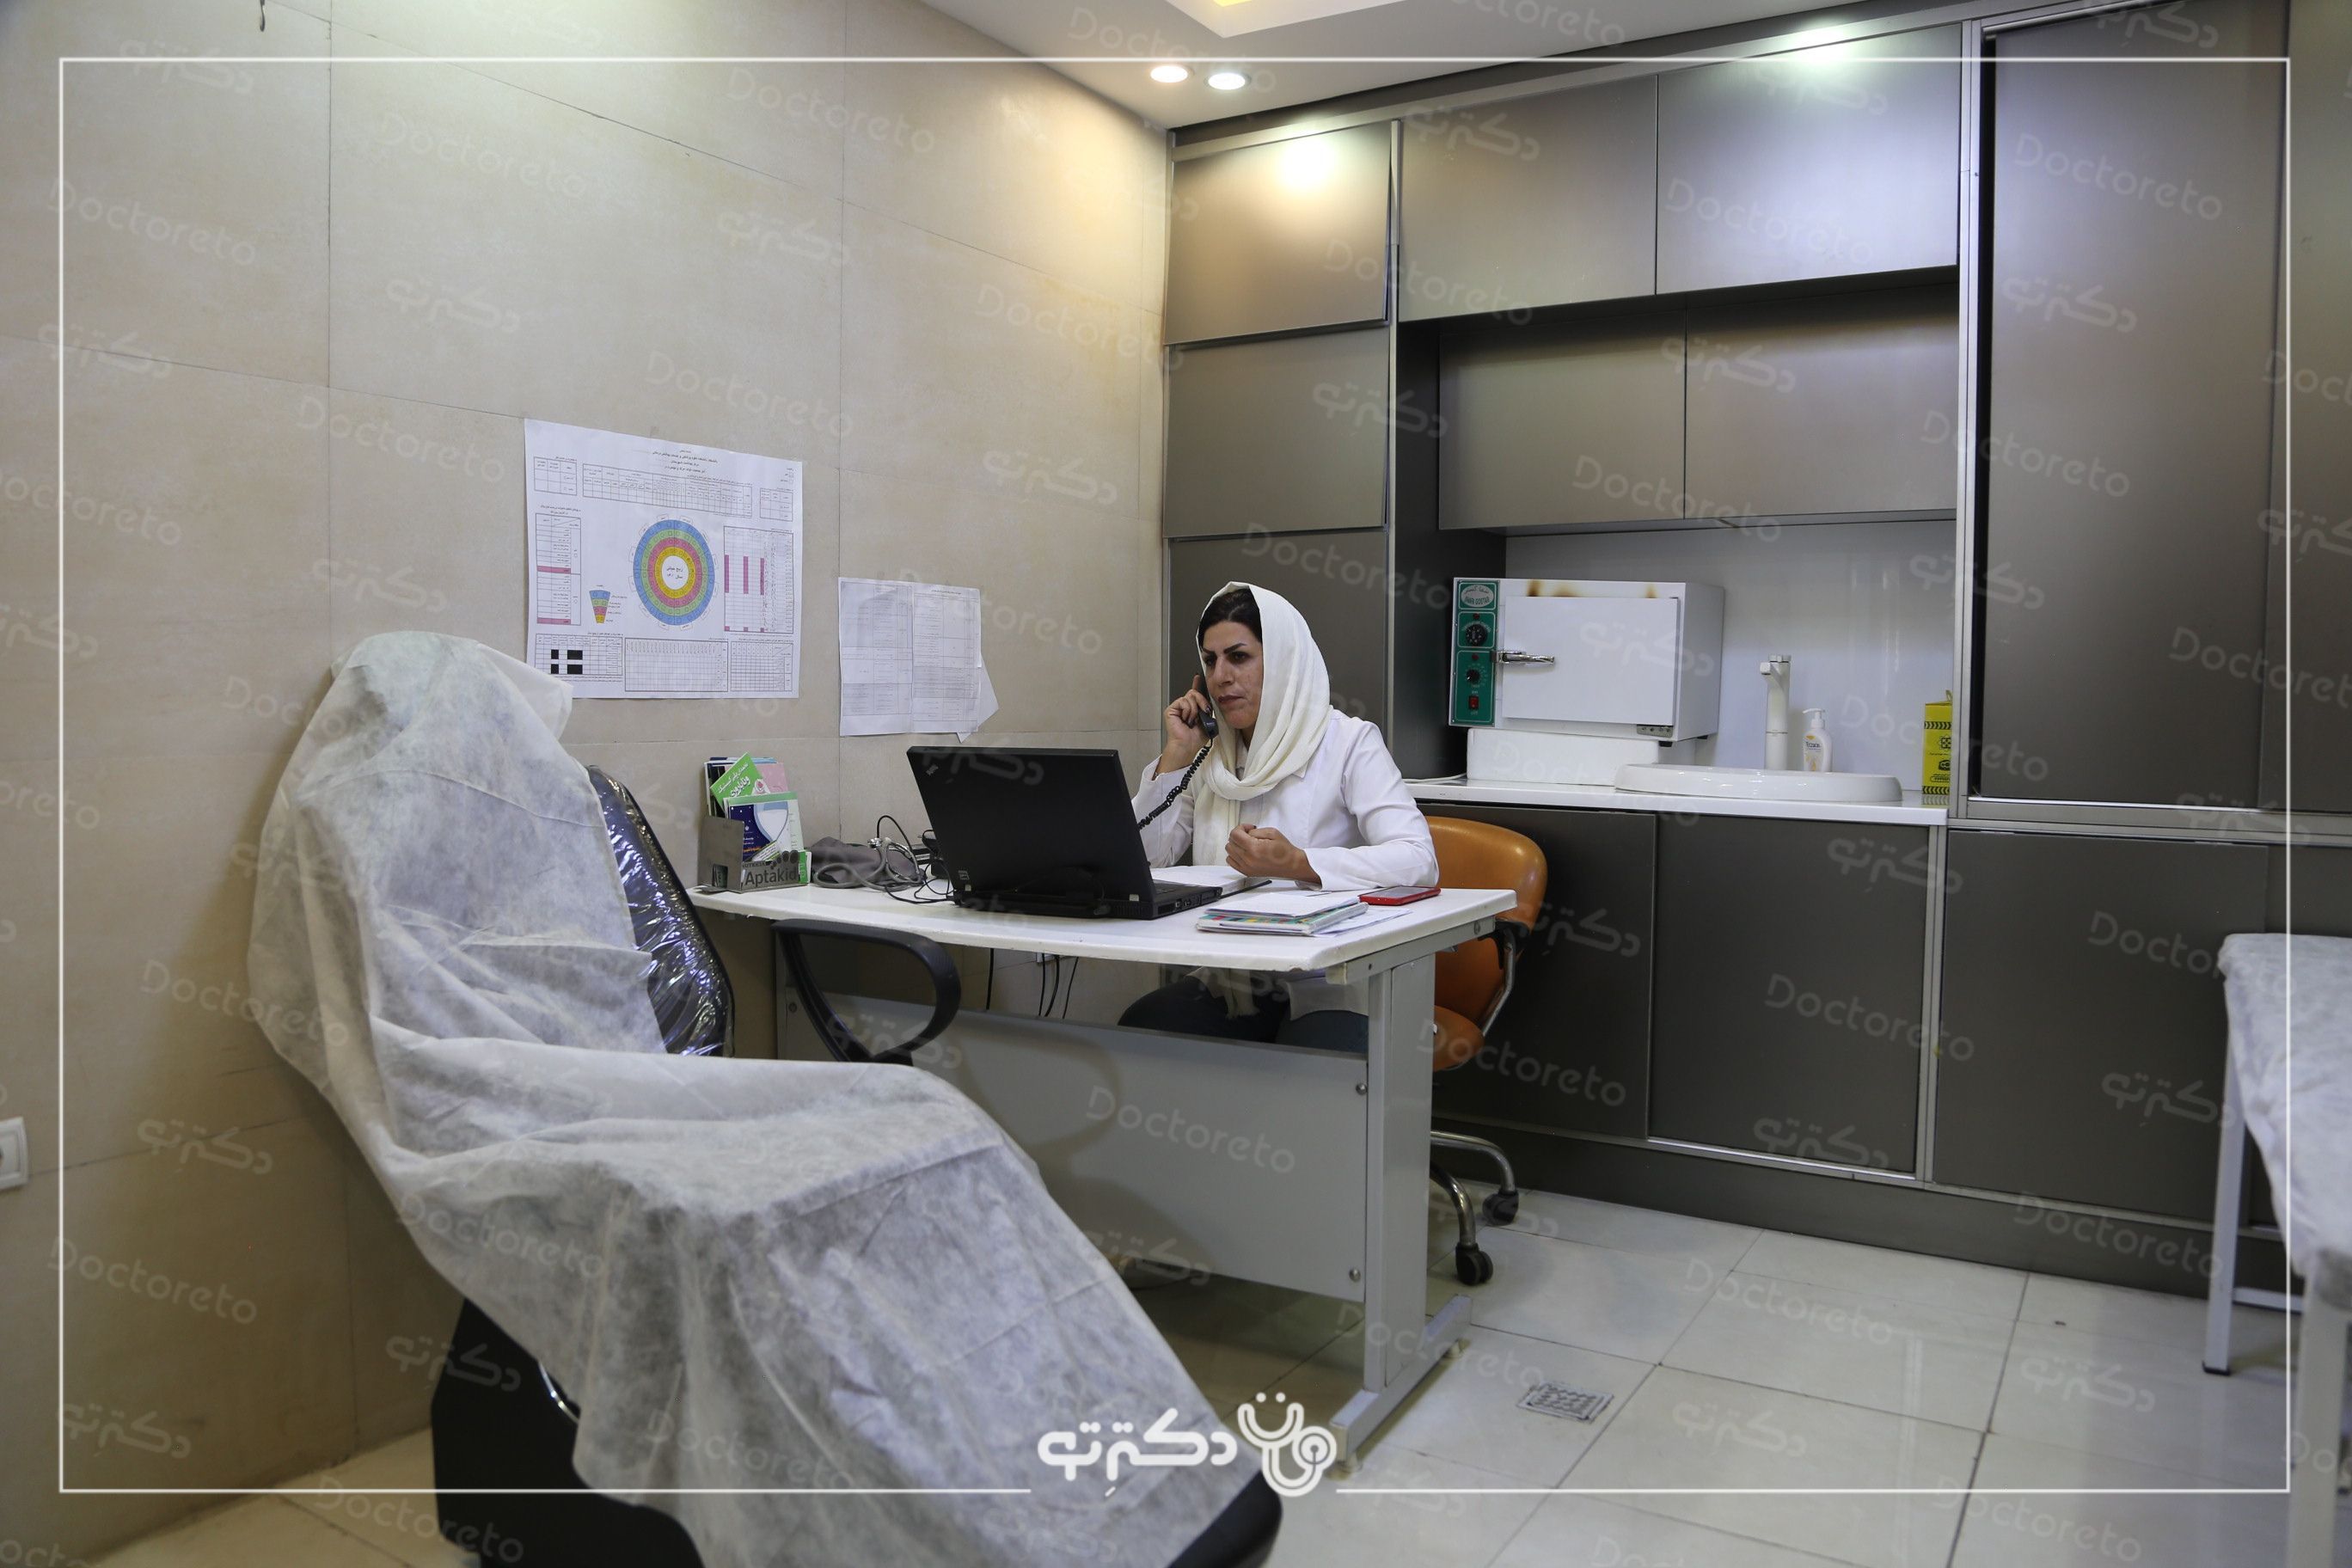 تزریق ژل خط خنده با برند های آیدیا (1cc) دکتر ابوالفضل بهجو در شیراز 4